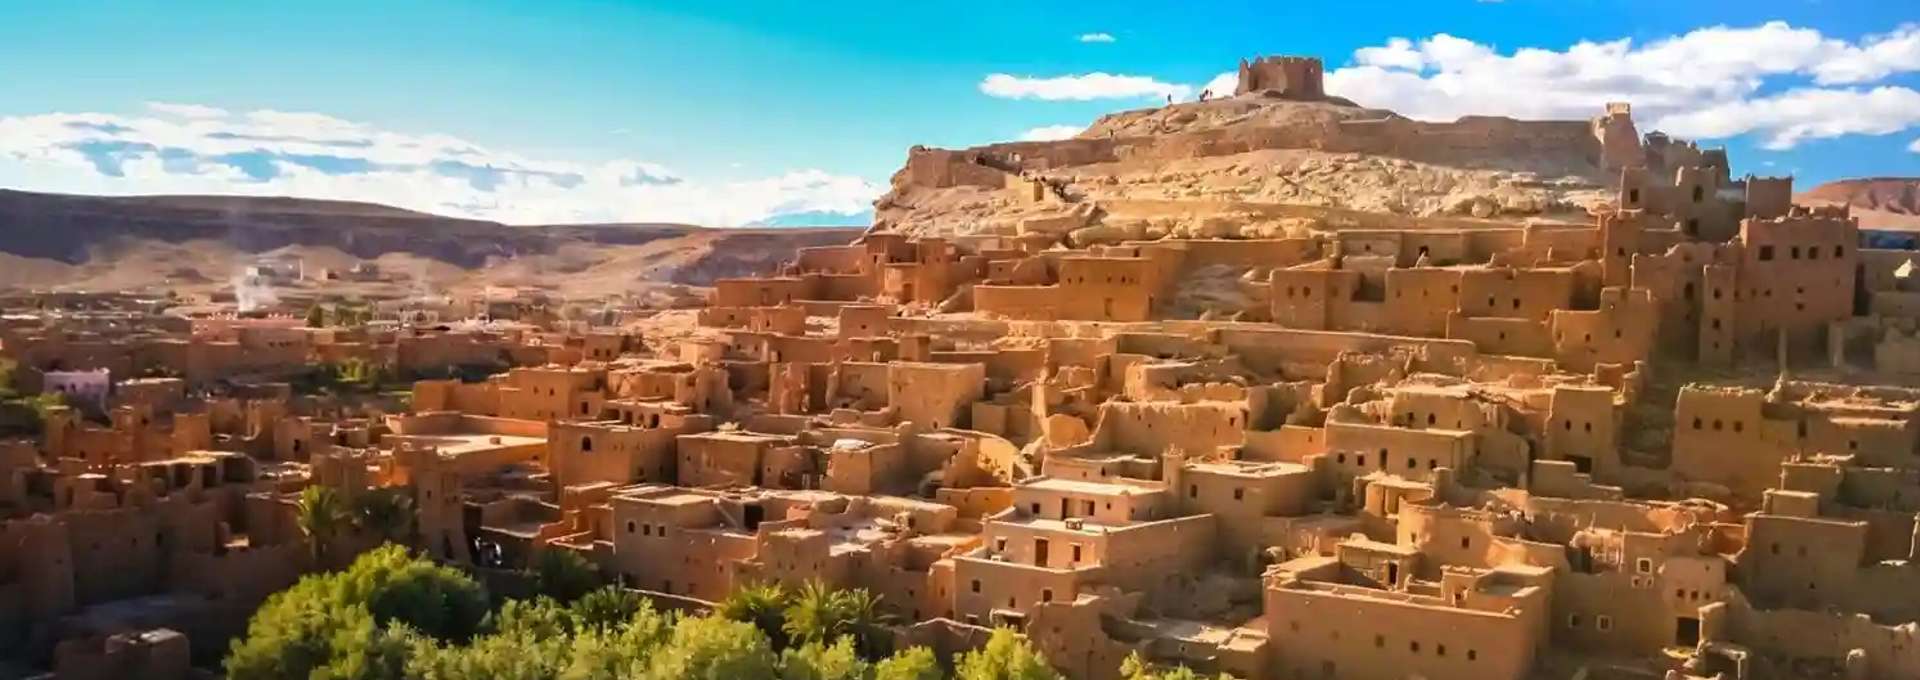 Ouarzazate Marruecos